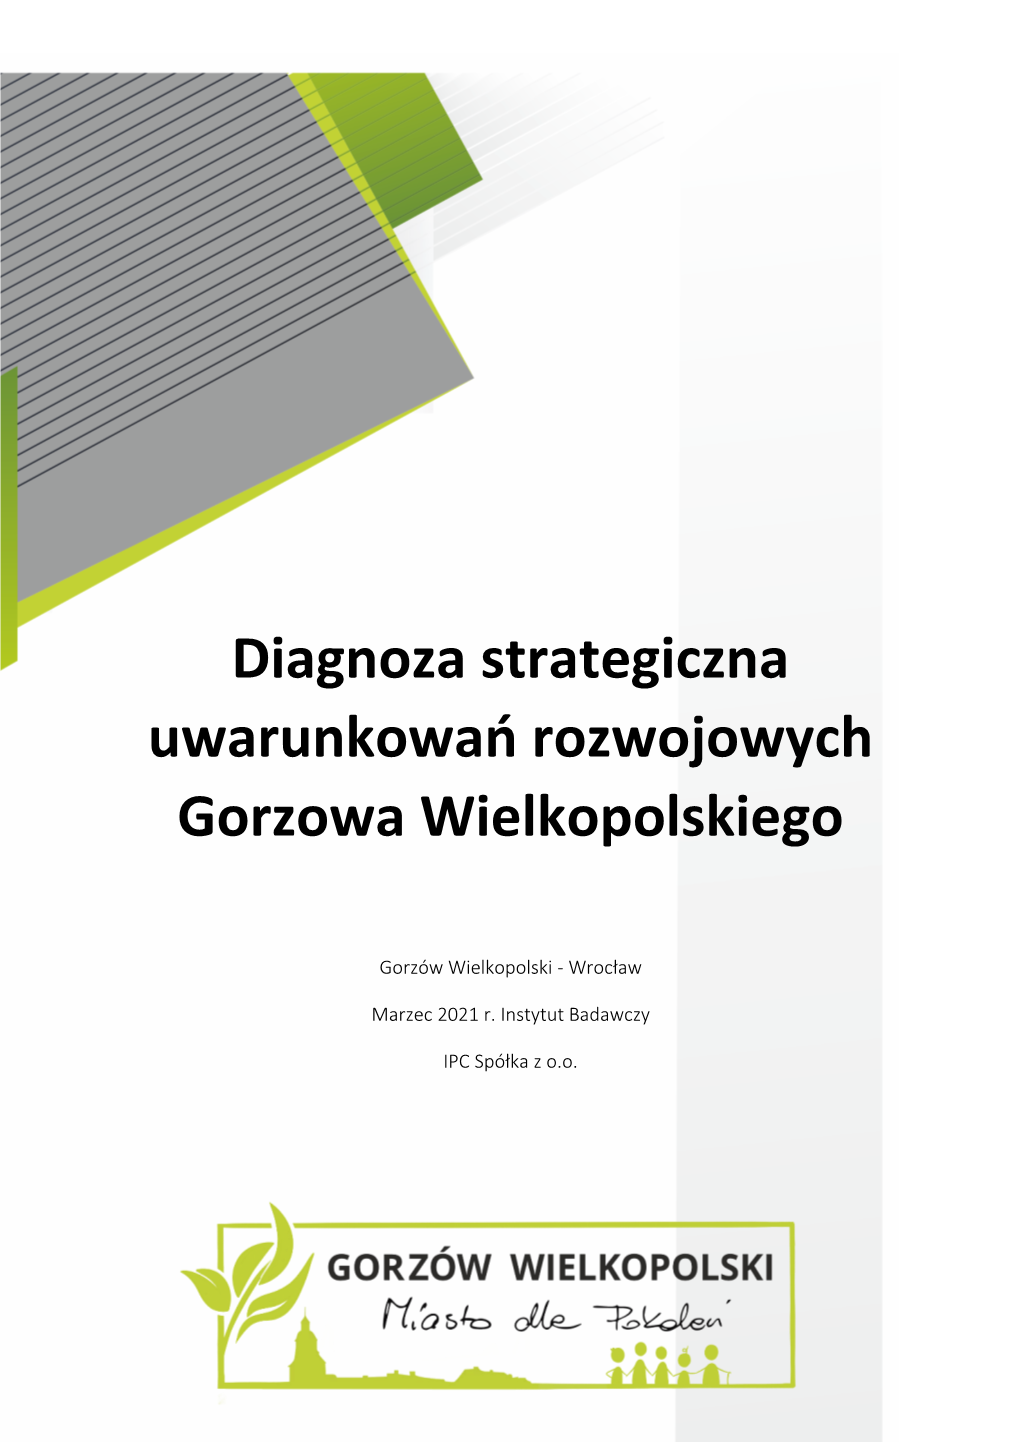 Diagnoza Strategiczna Uwarunkowań Rozwojowych Gorzowa Wielkopolskiego